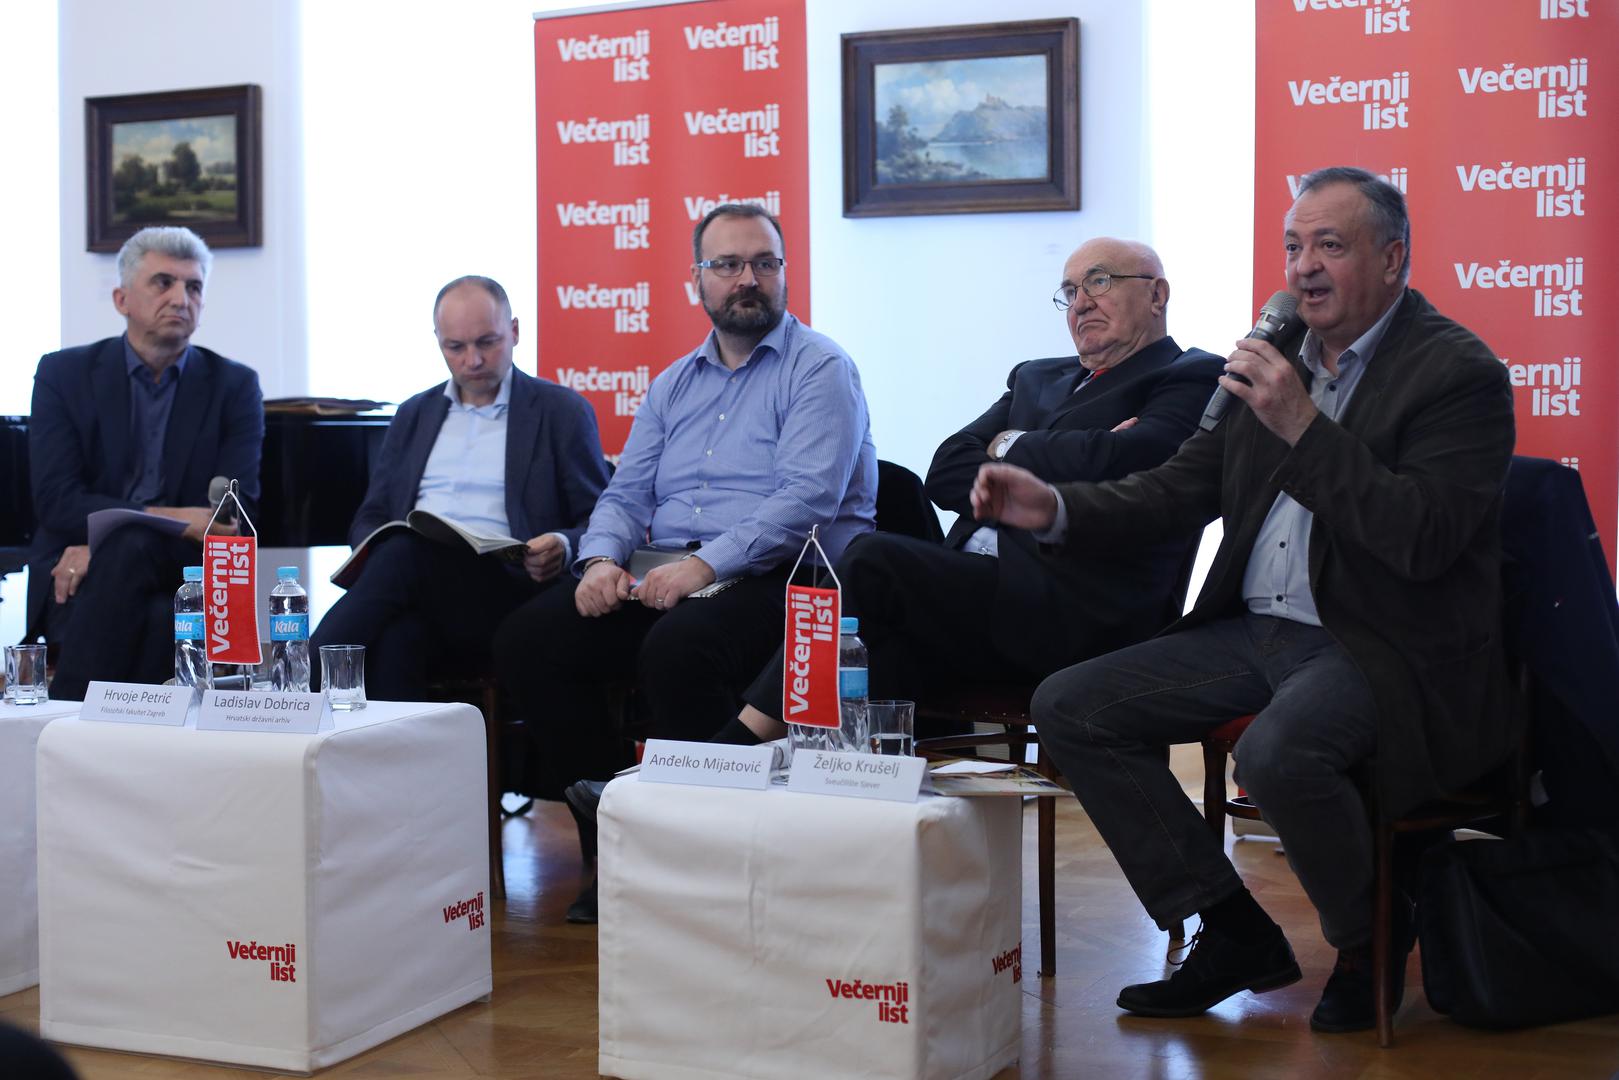 Sudionici: (s lijeva na desno) Žarko Ivković, Hrvoje Petrić, Ladislav Dobrica, Anđelko Mijatović i Željko Krušelj